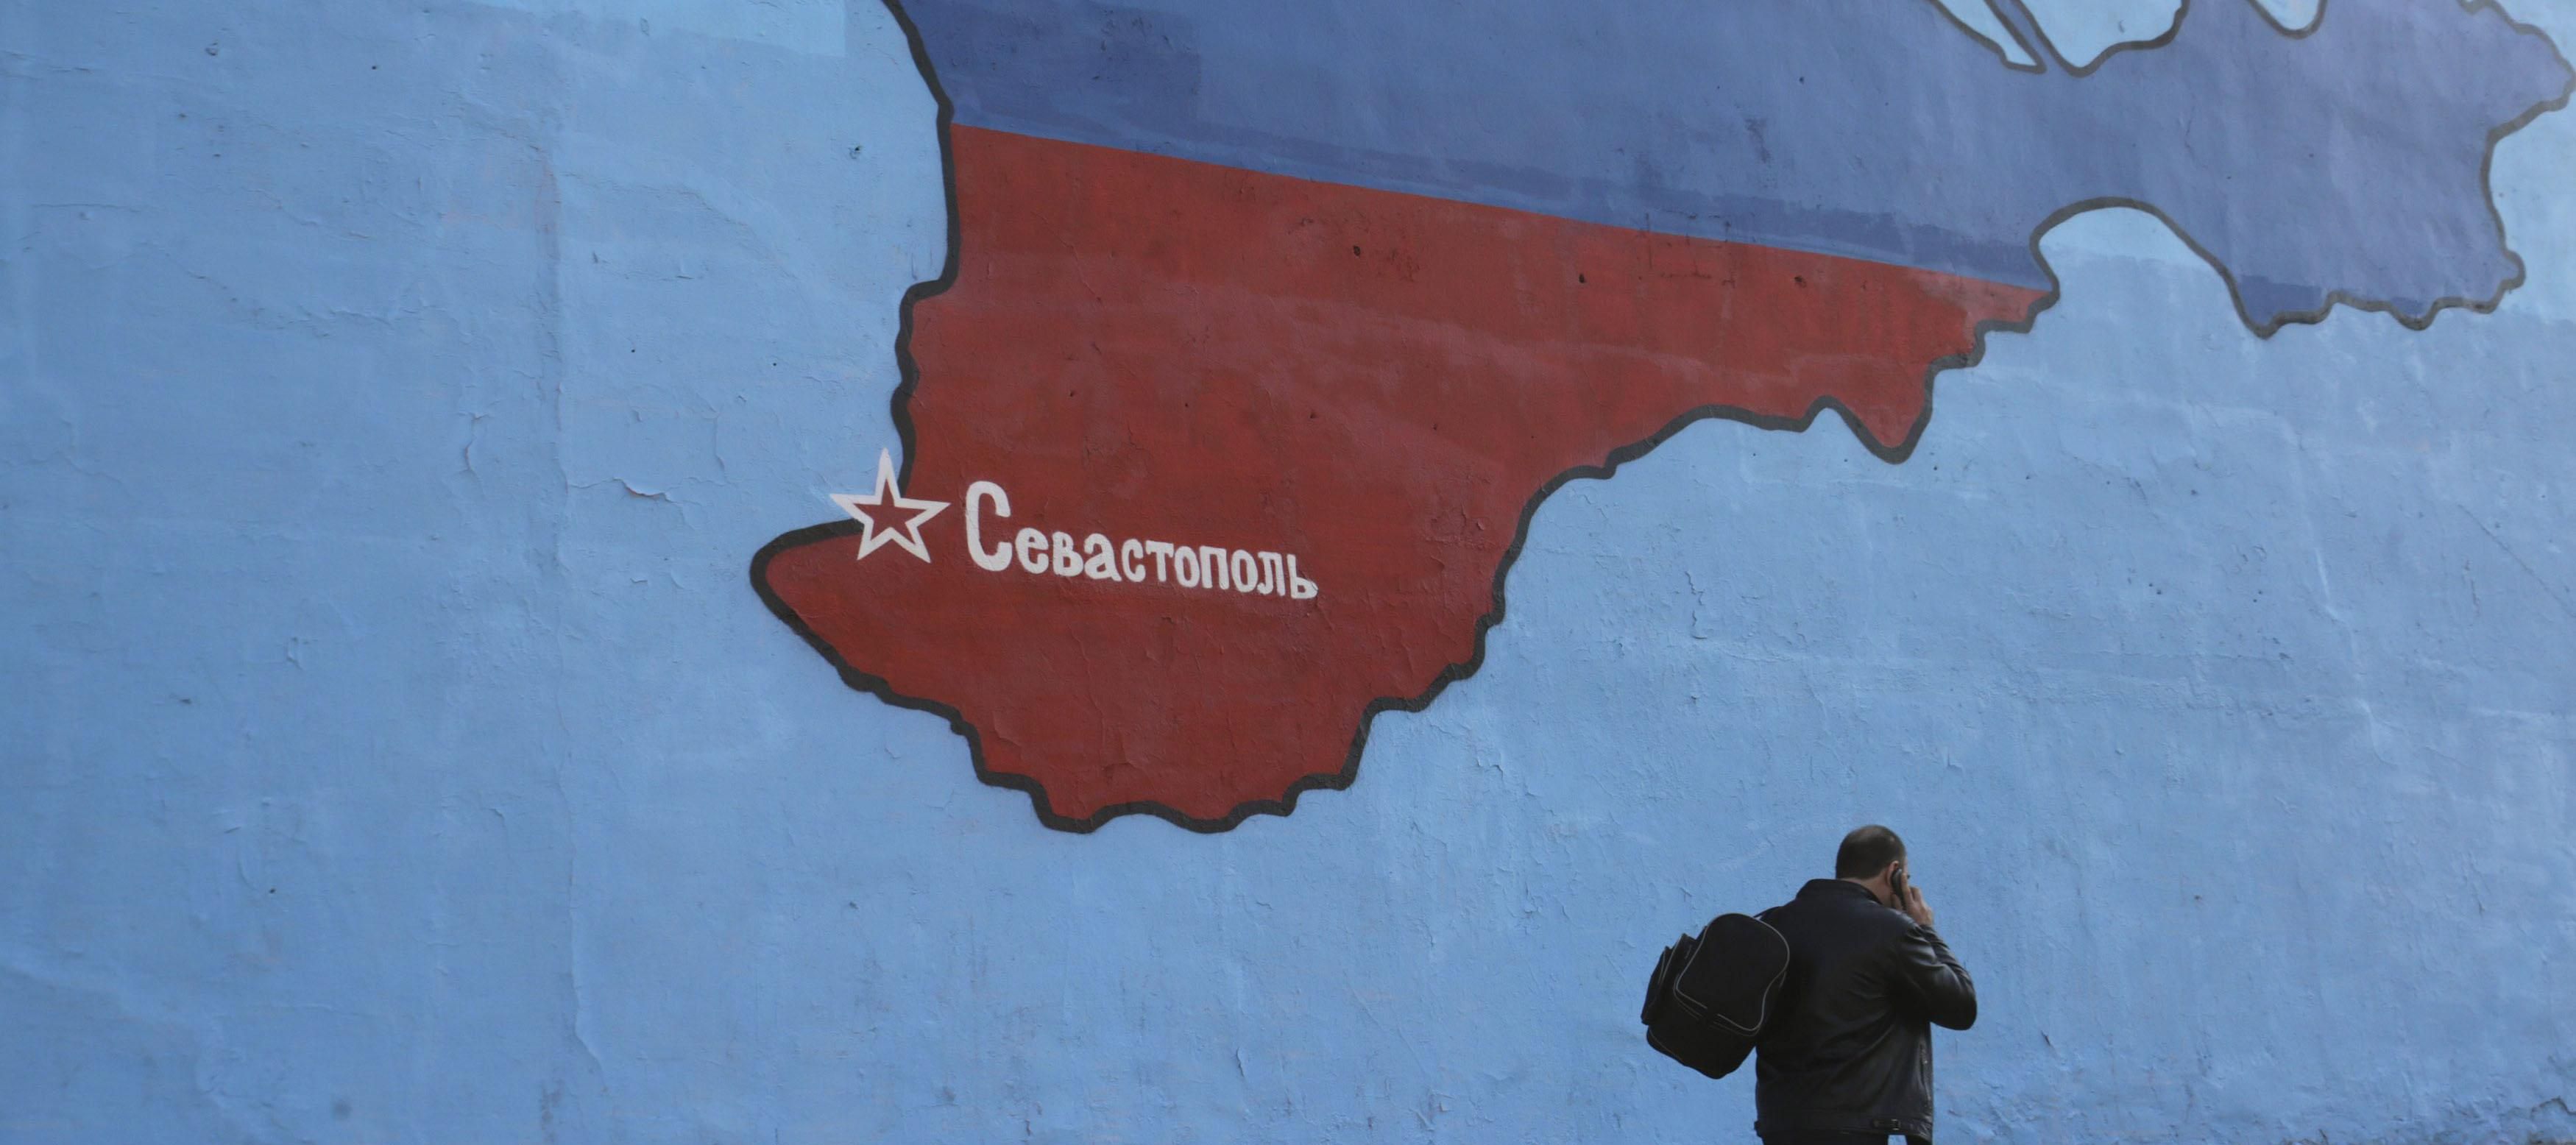 Жители оккупированного Крыма вышли на улицы против власти: фото